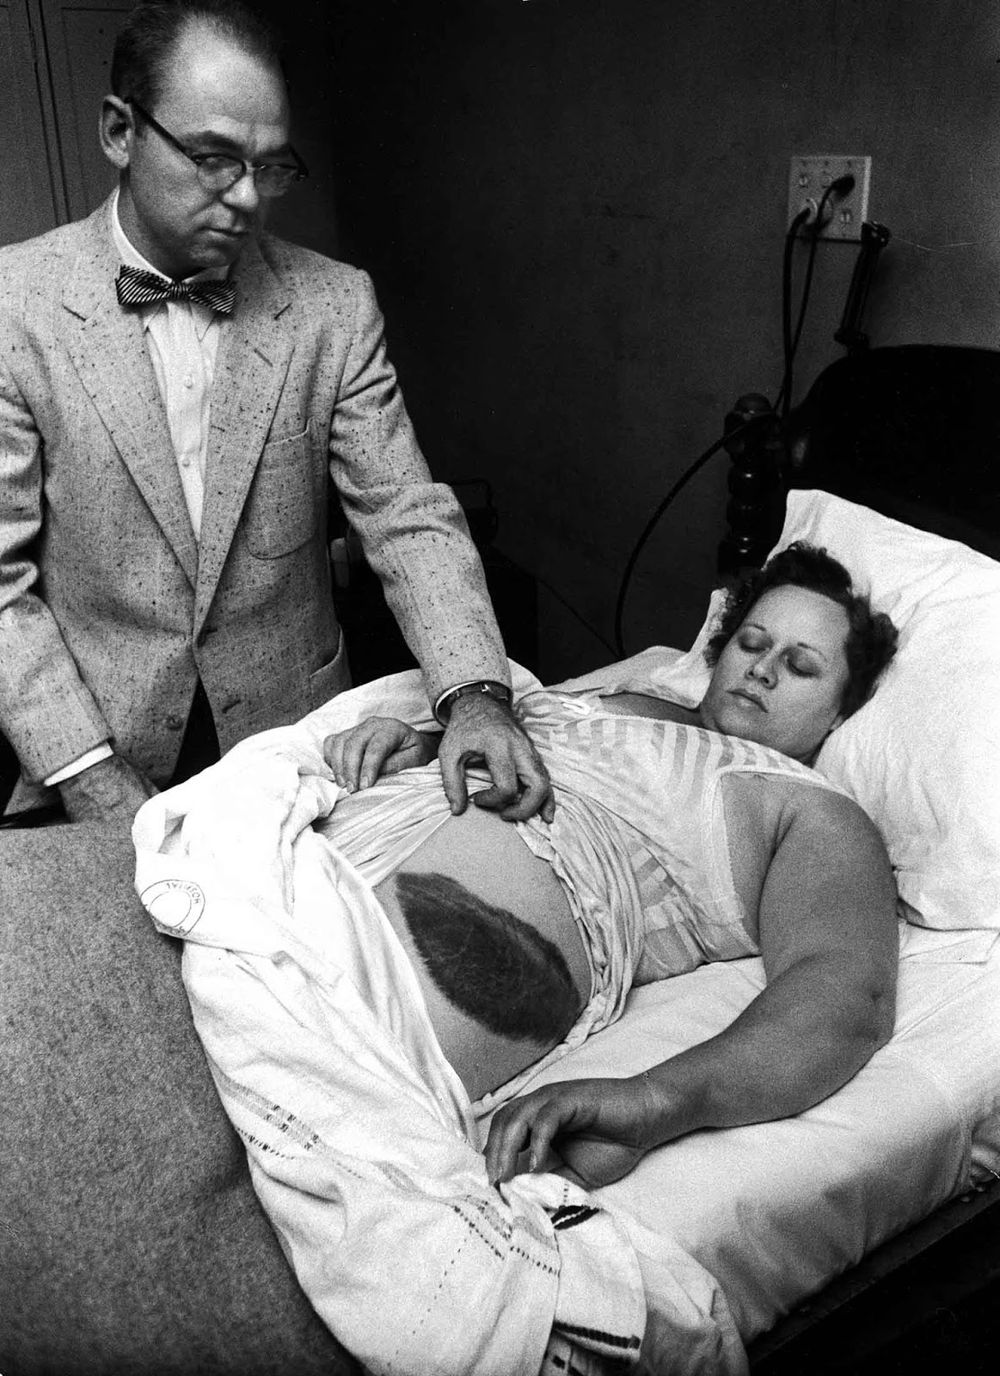 Метеорит попал в женщину. Муди Джейкобс показывает гигантский синяк на боку и бедре своей пациентки Энн Ходжес в 1954 году после удара метеорита.